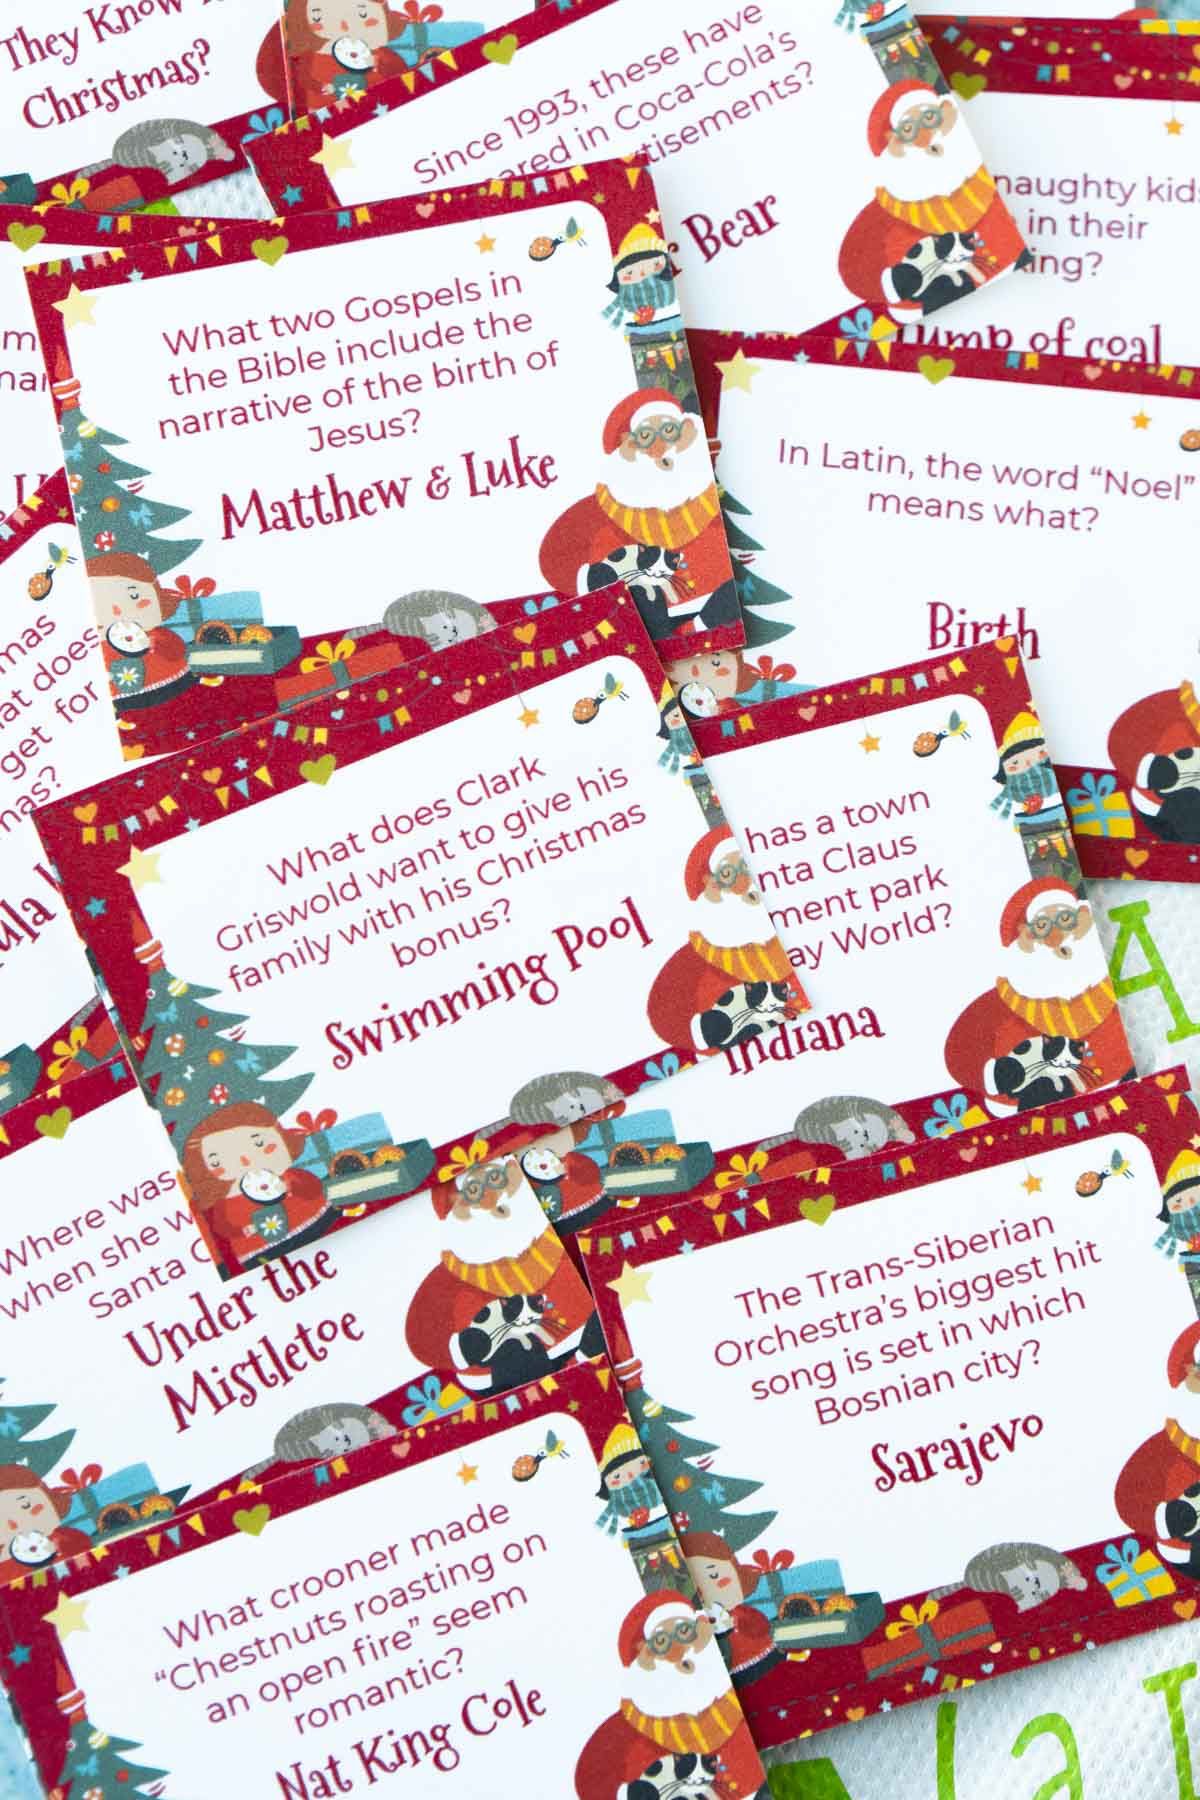 Preguntas de trivia de Navidad en tarjetas en una pila